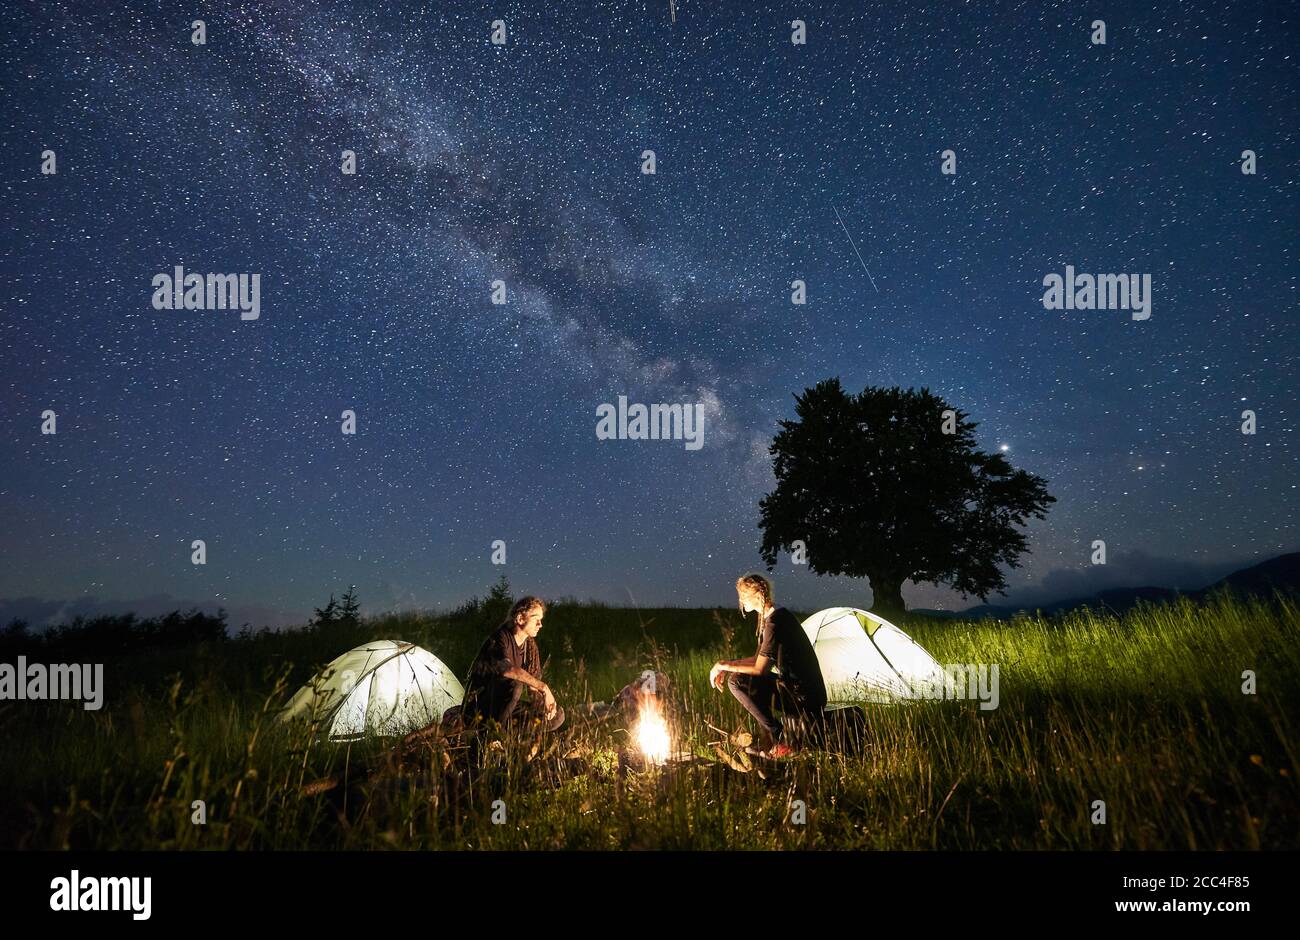 Hermosa vista del cielo estrellado nocturno sobre la pradera con  excursionistas cerca de carpas de campamento iluminadas. Turistas sentados  cerca de fogatas bajo el mágico cielo azul con estrellas. Concepto de viaje,